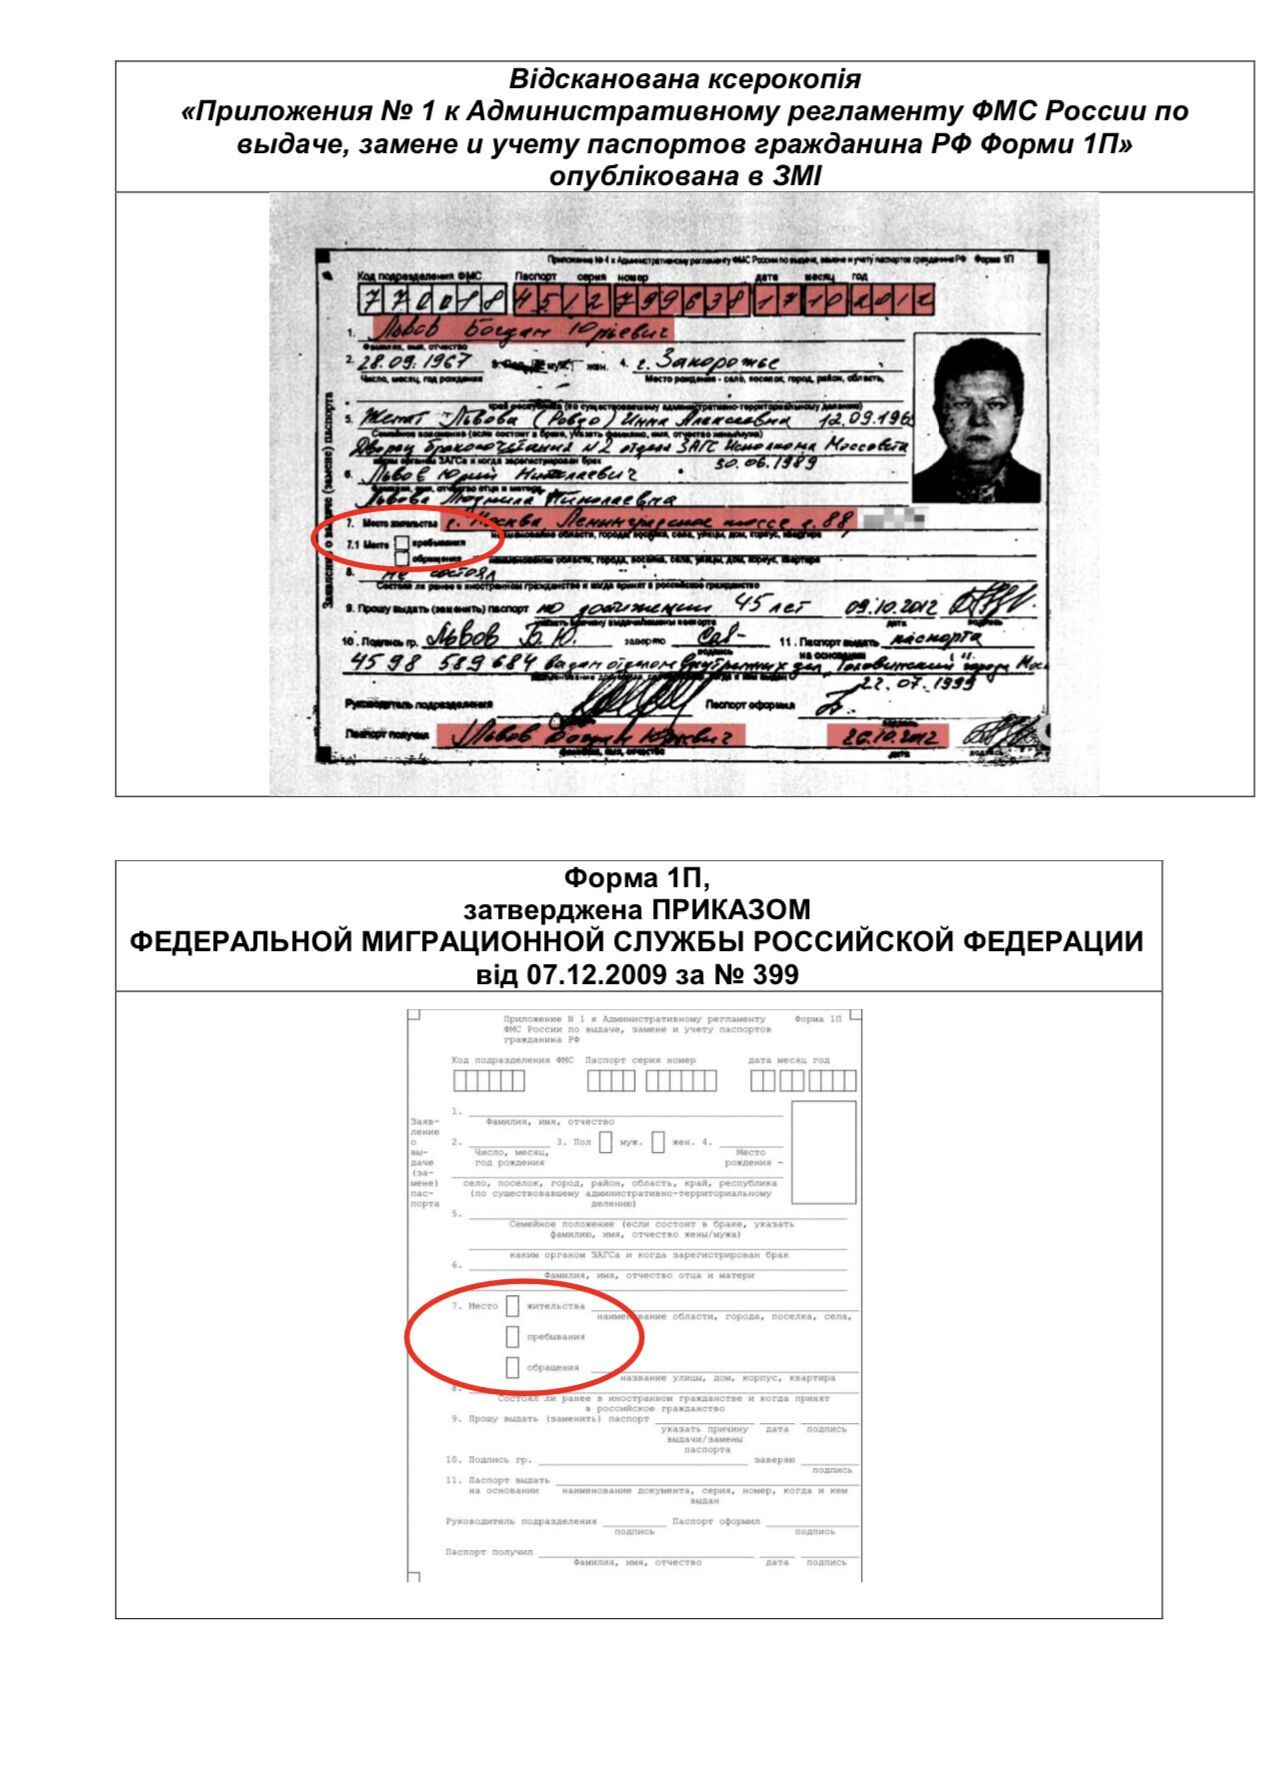 Суддя Львов спростував наявність паспорта РФ: "продемонстрована журналістами довідка фальшивка". Документ